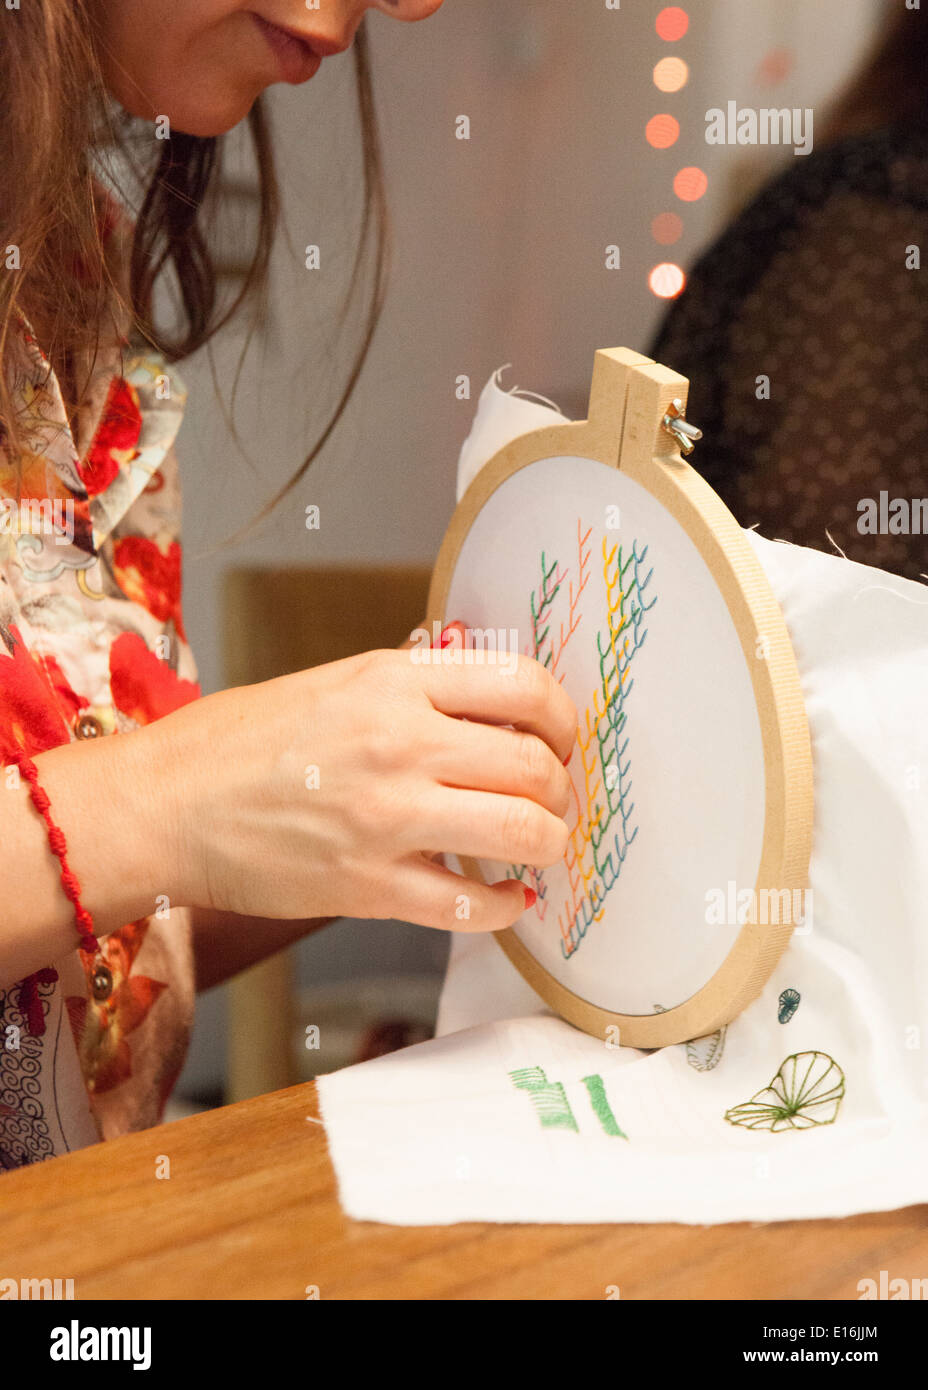 Woman cross stitching Stock Photo